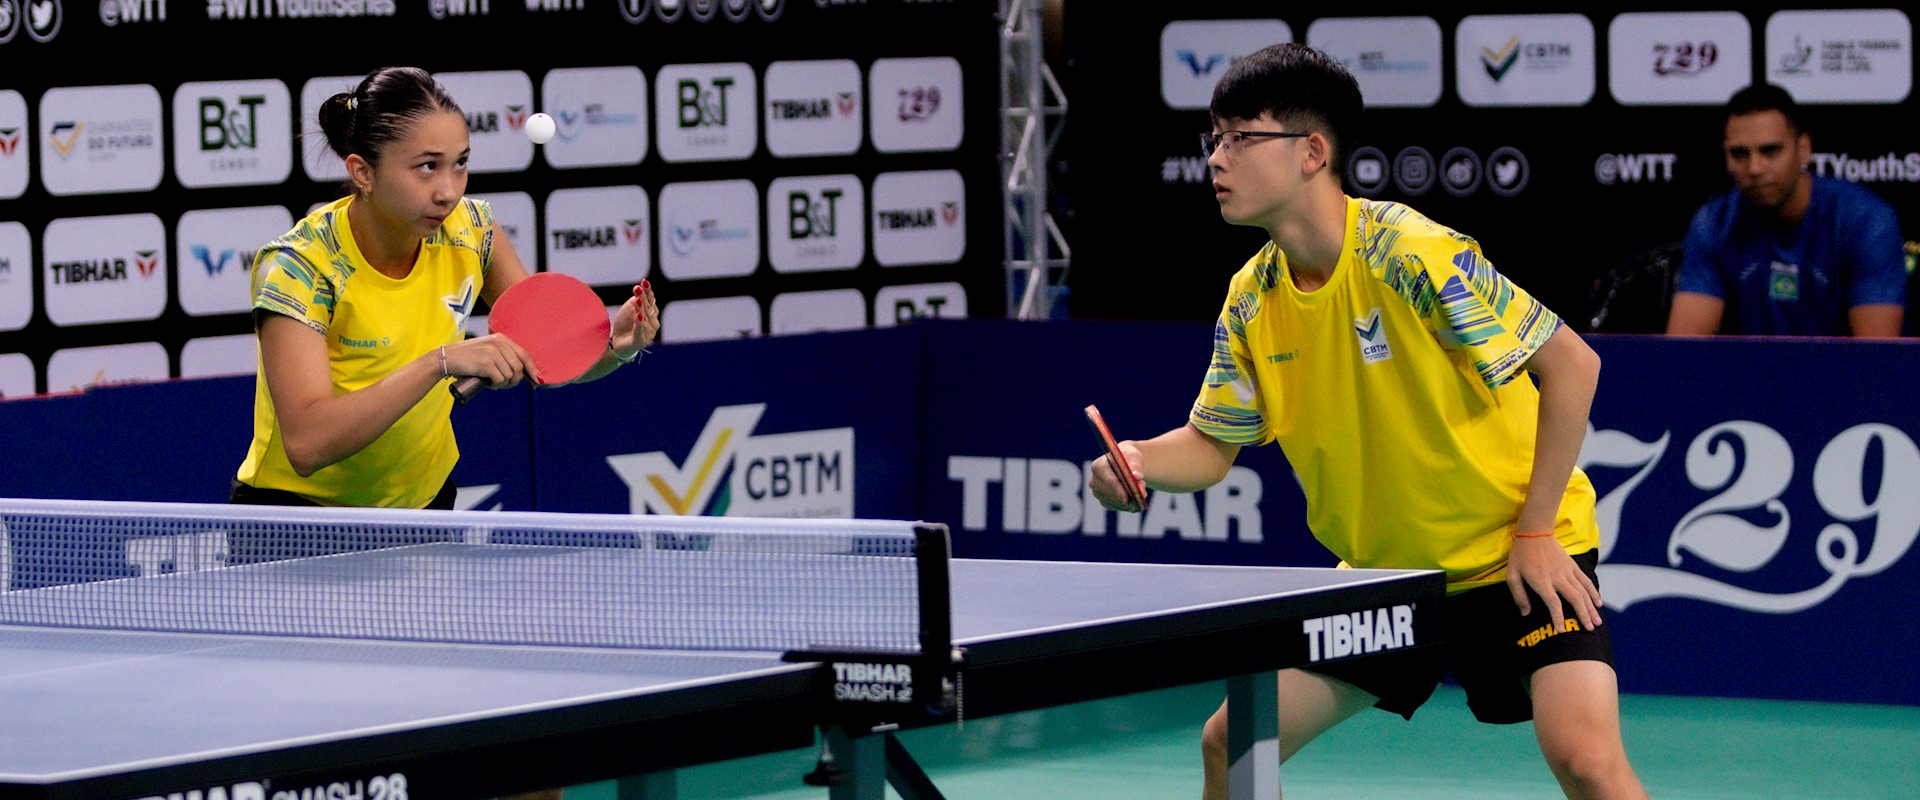 Após vitória contra dupla da Austrália, Giulia Takahashi e Leonardo Iizuka se despedem da disputa de duplas do Mundial de Jovens nas oitavas